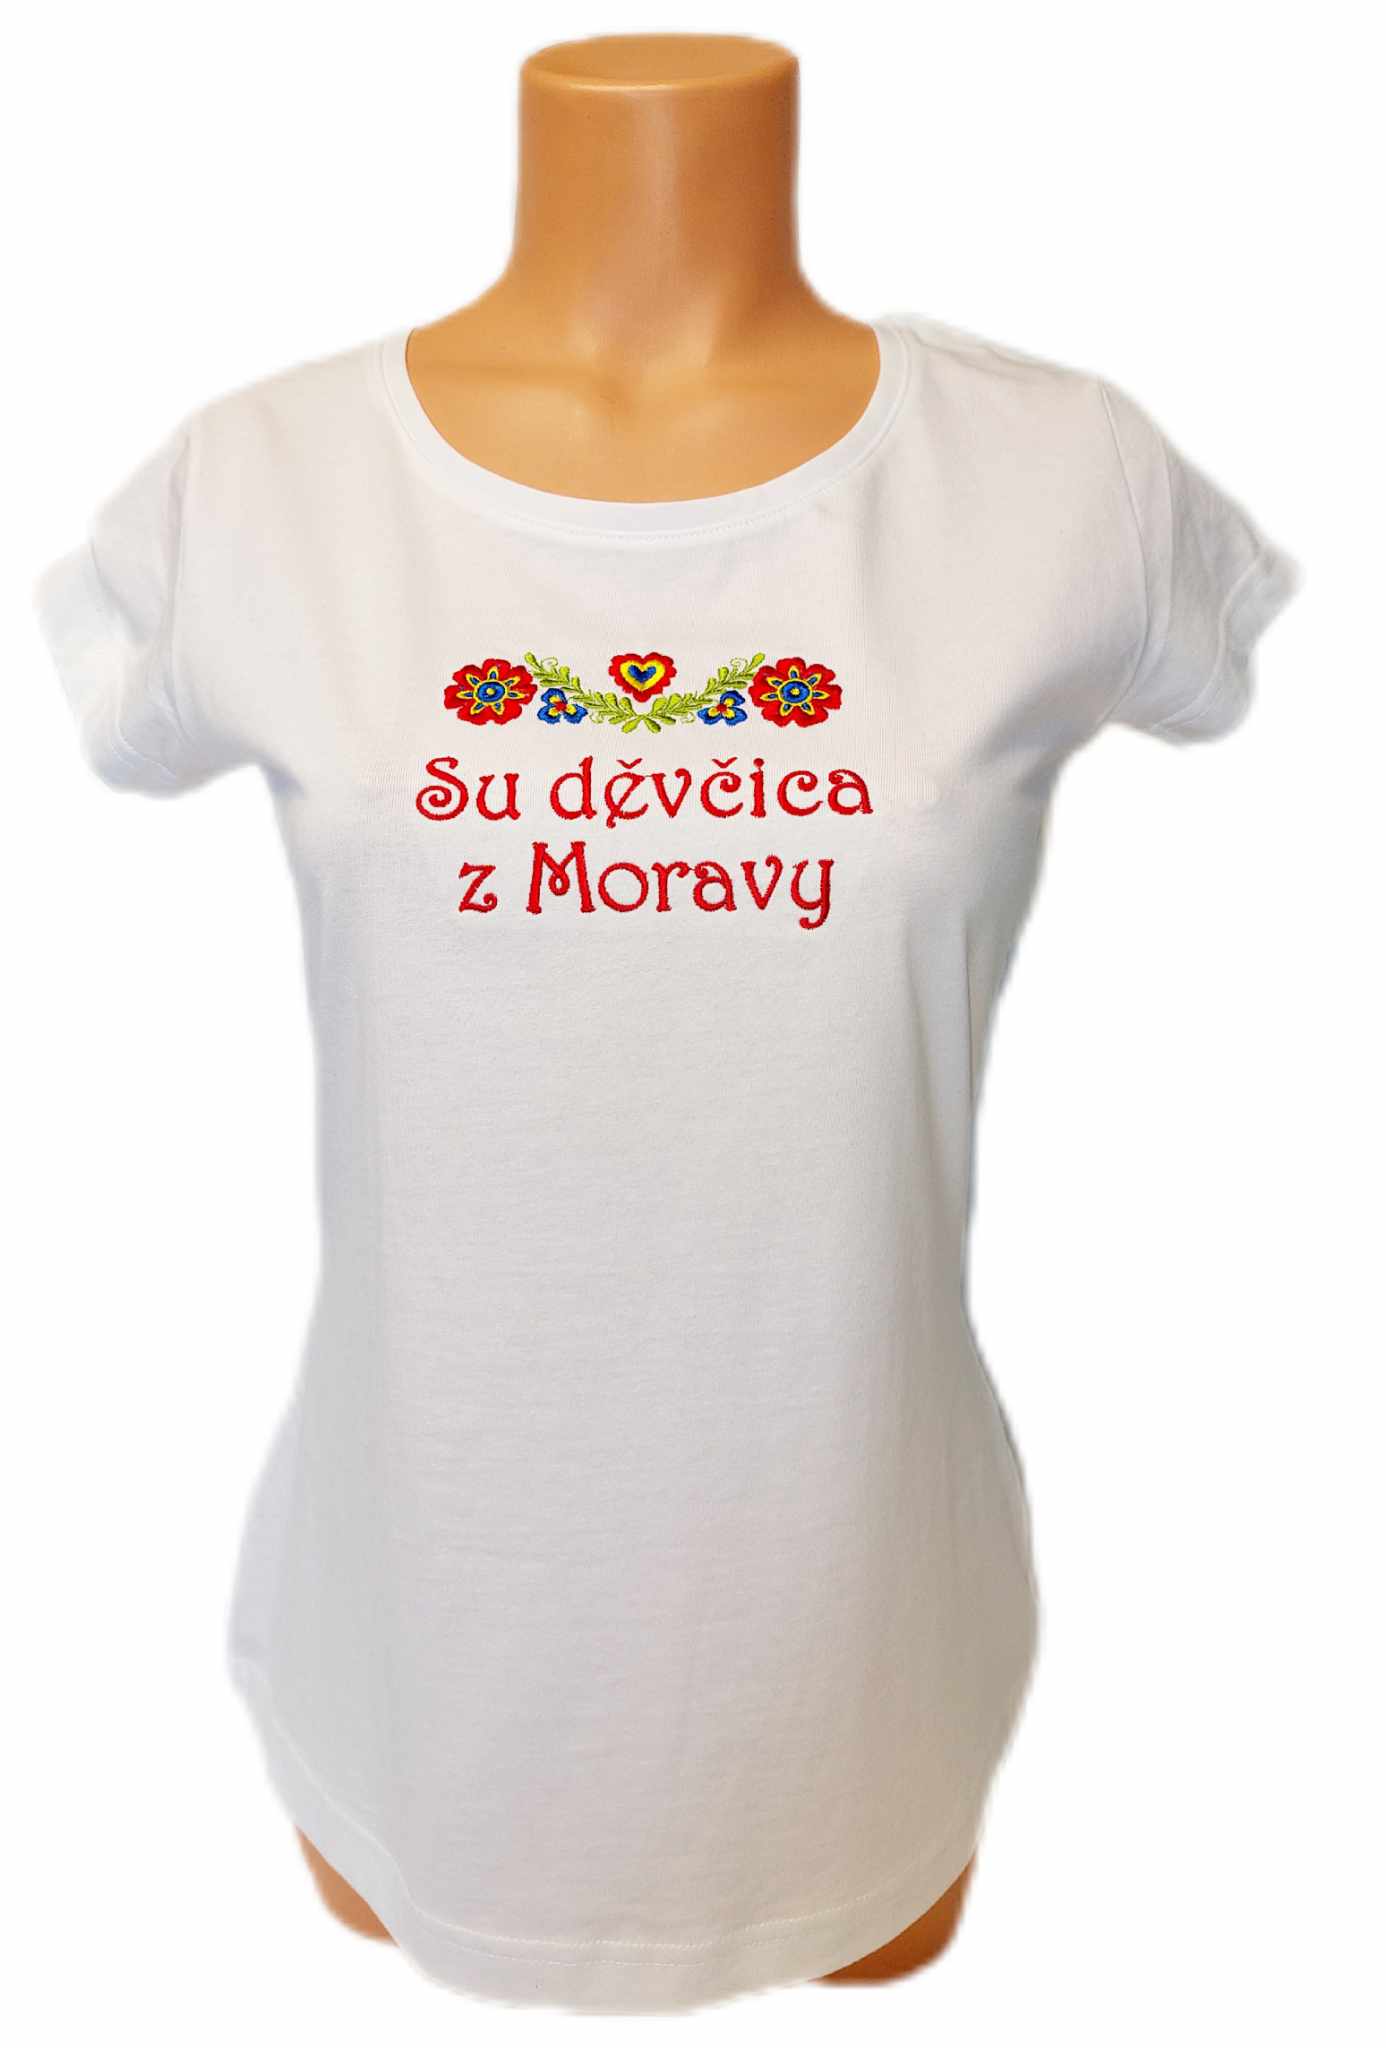 Dámské trièko s výšivkou Dìvèica z Moravy bílé